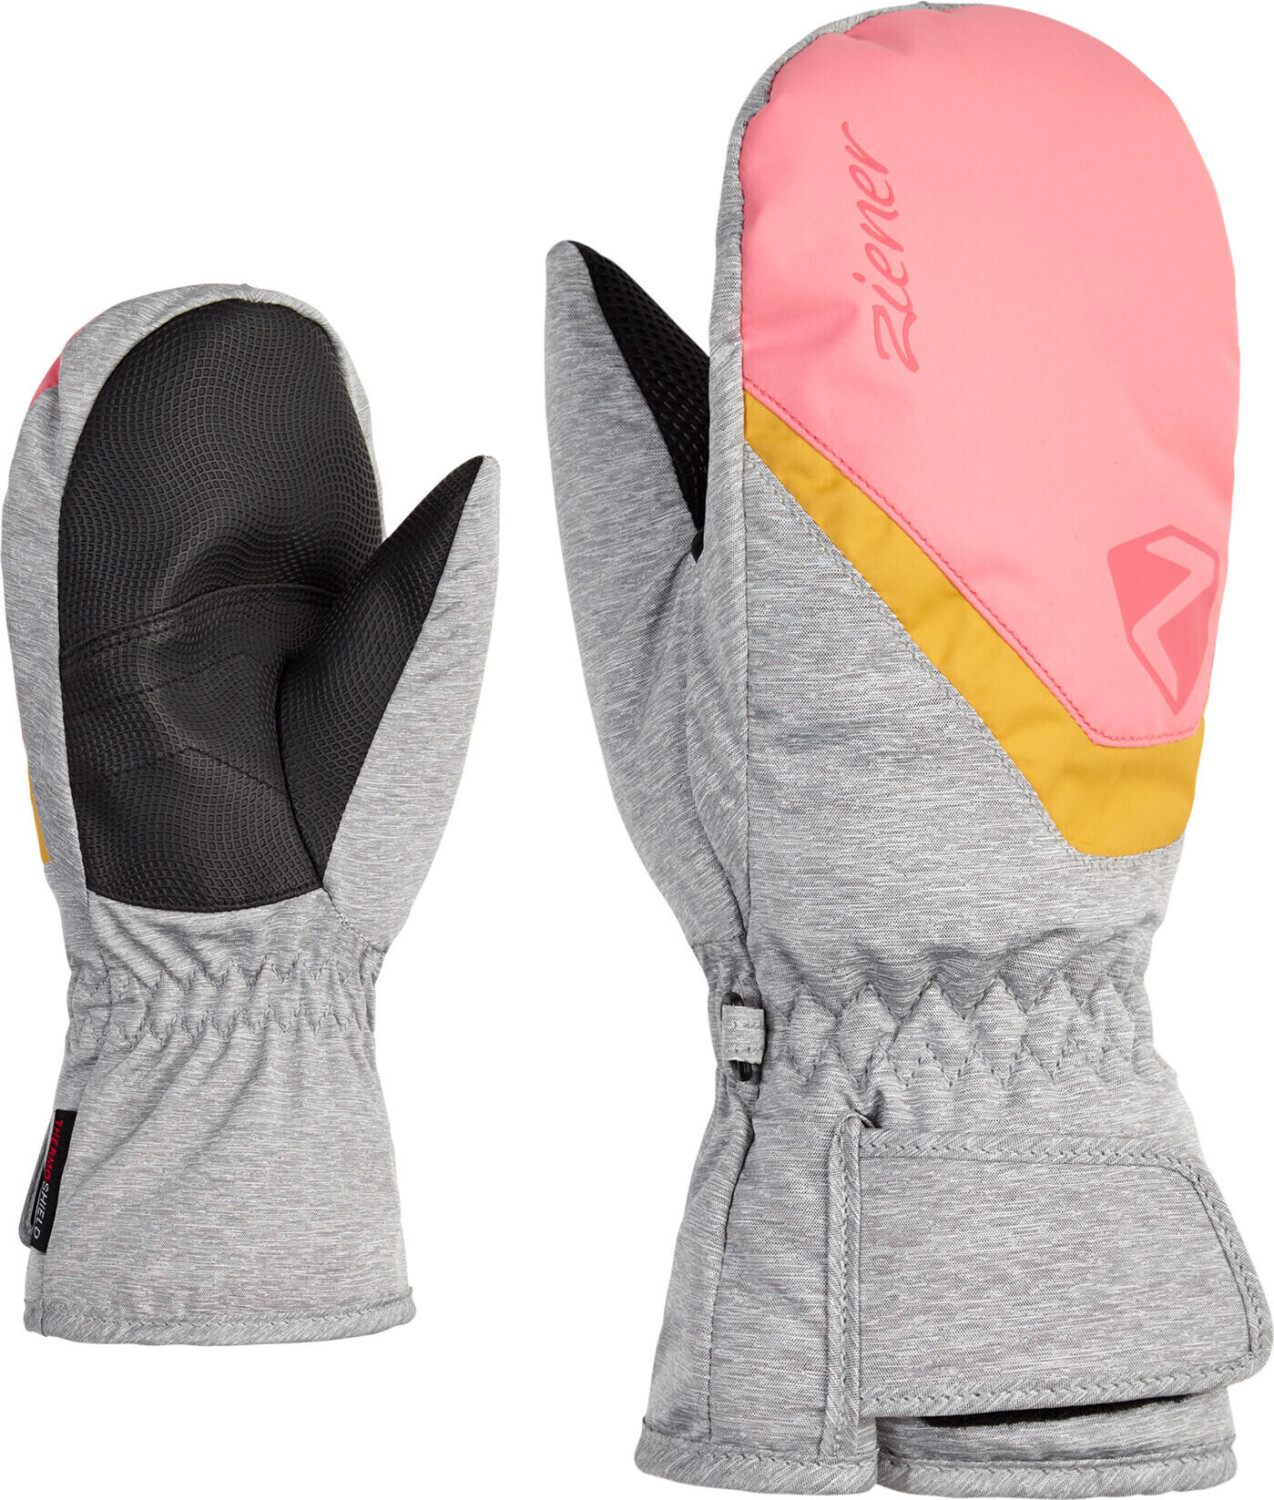 Ziener Loriano ASR Mitten Glove bei ab vanilla Junior 27,90 pink | € Preisvergleich